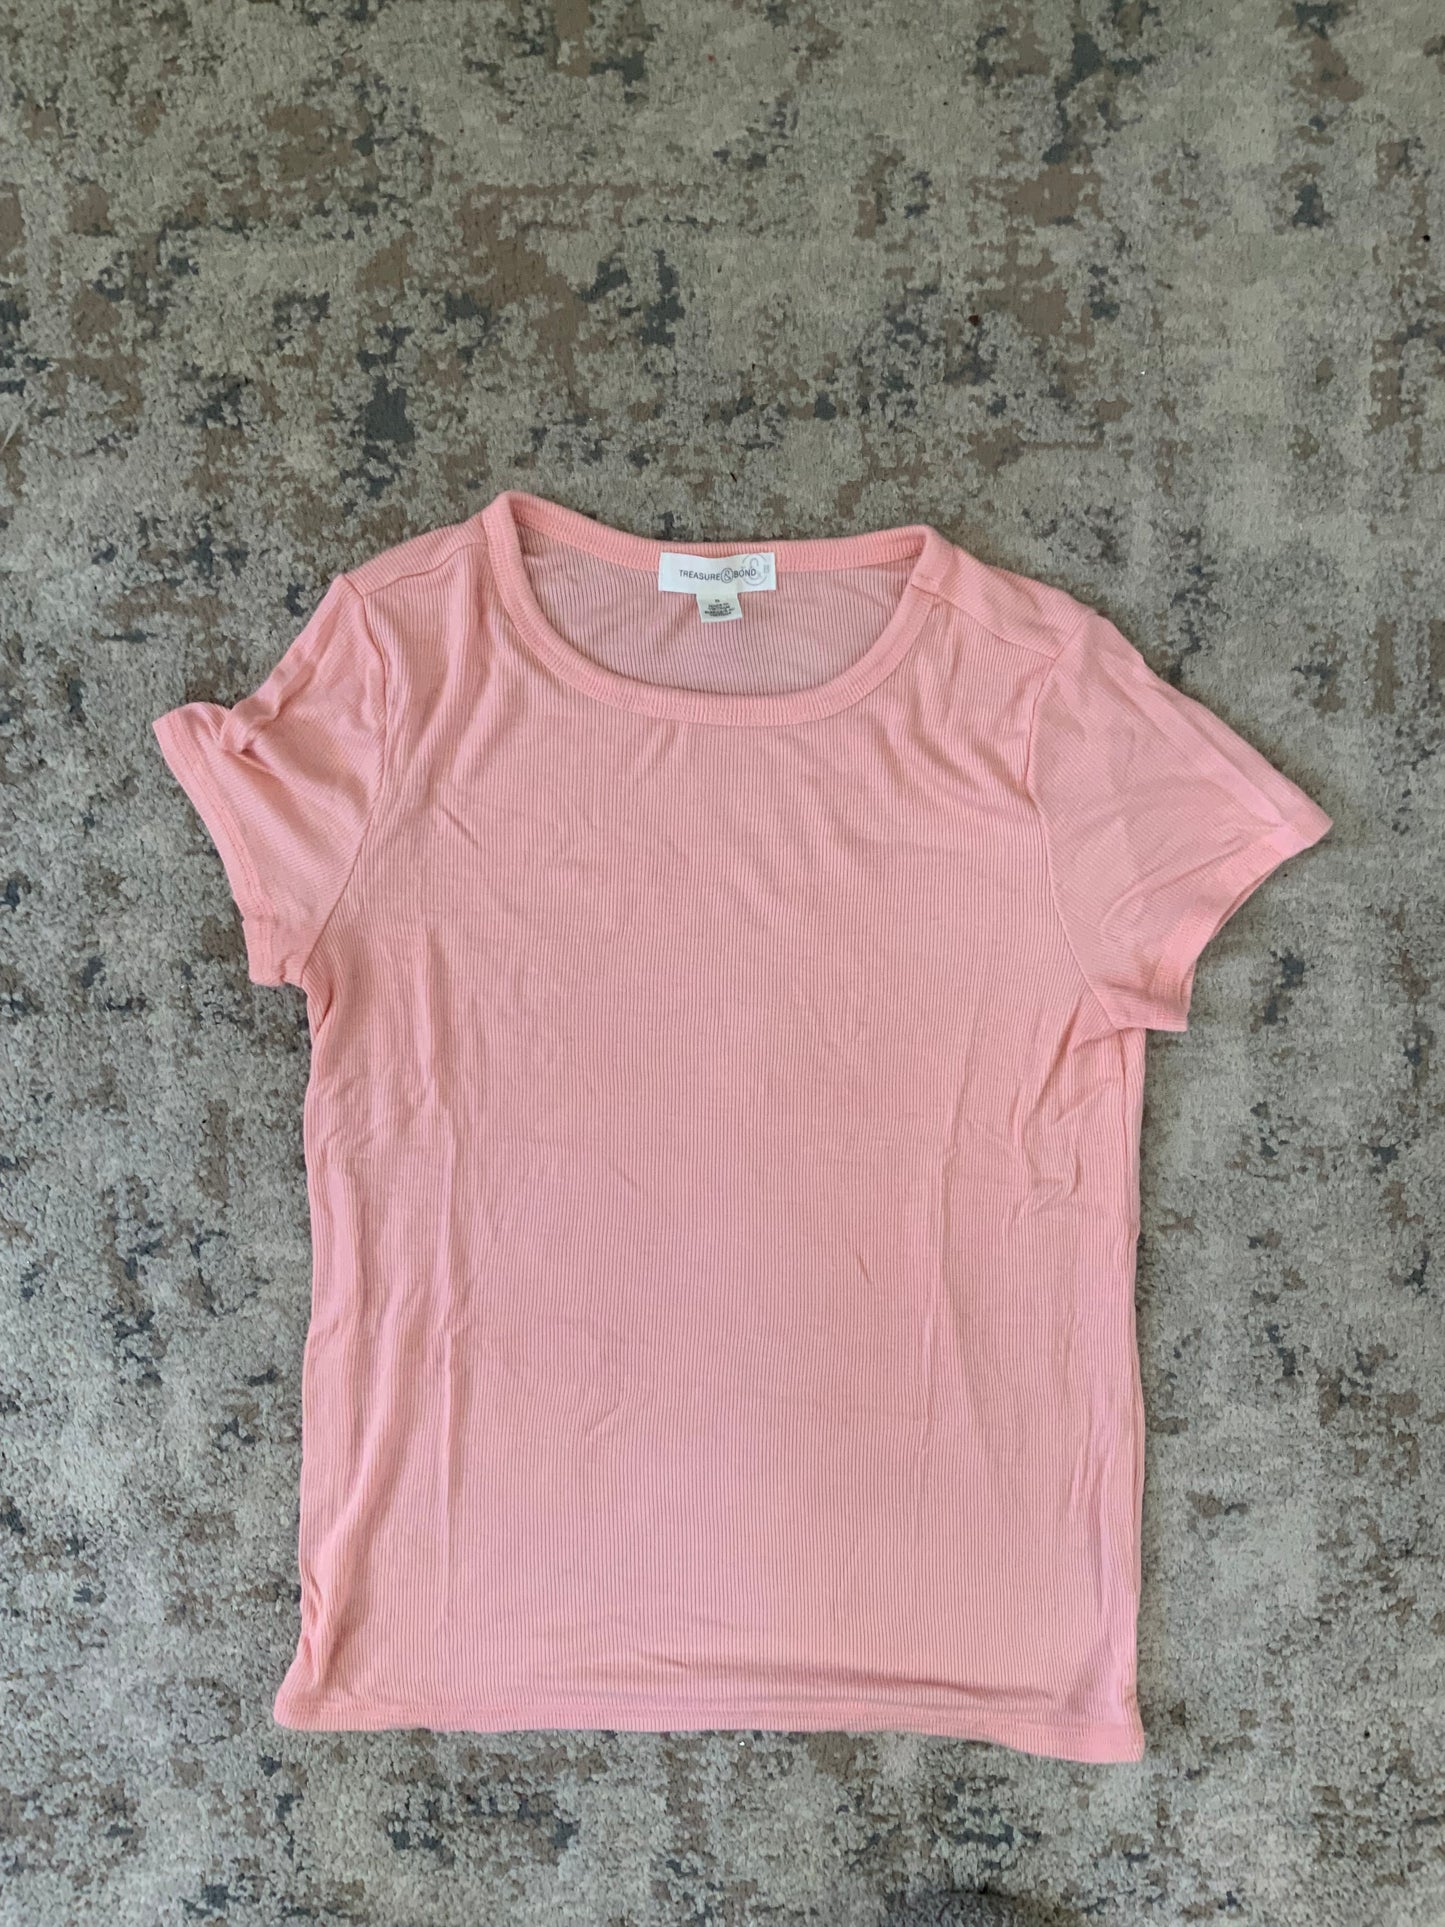 Women’s XS/S T-shirt Bundle